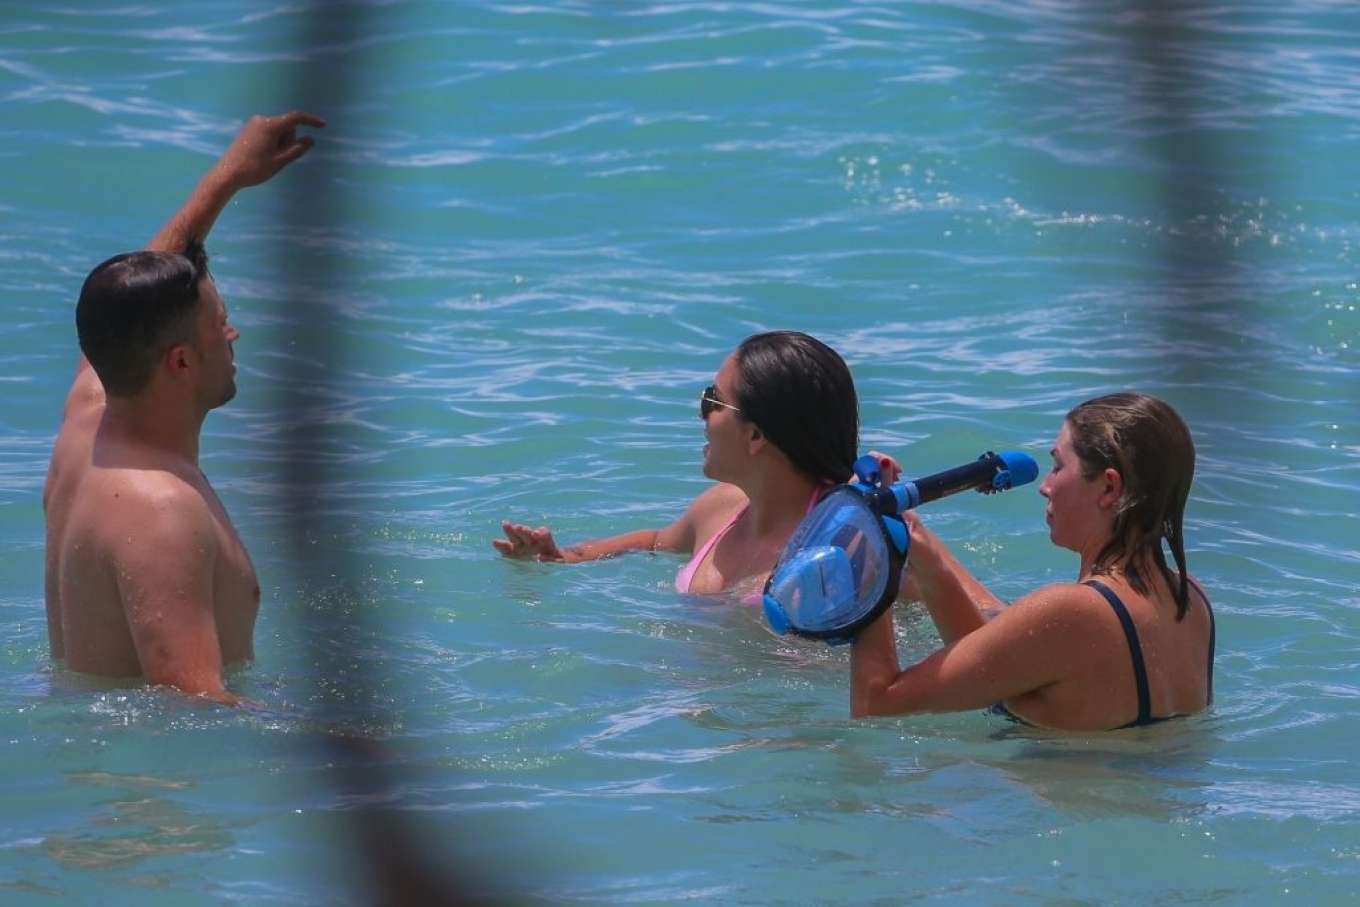 Nastassia Bianca Stassi Schroeder and Katie Maloney-Schwartz on the beach in Waikiki